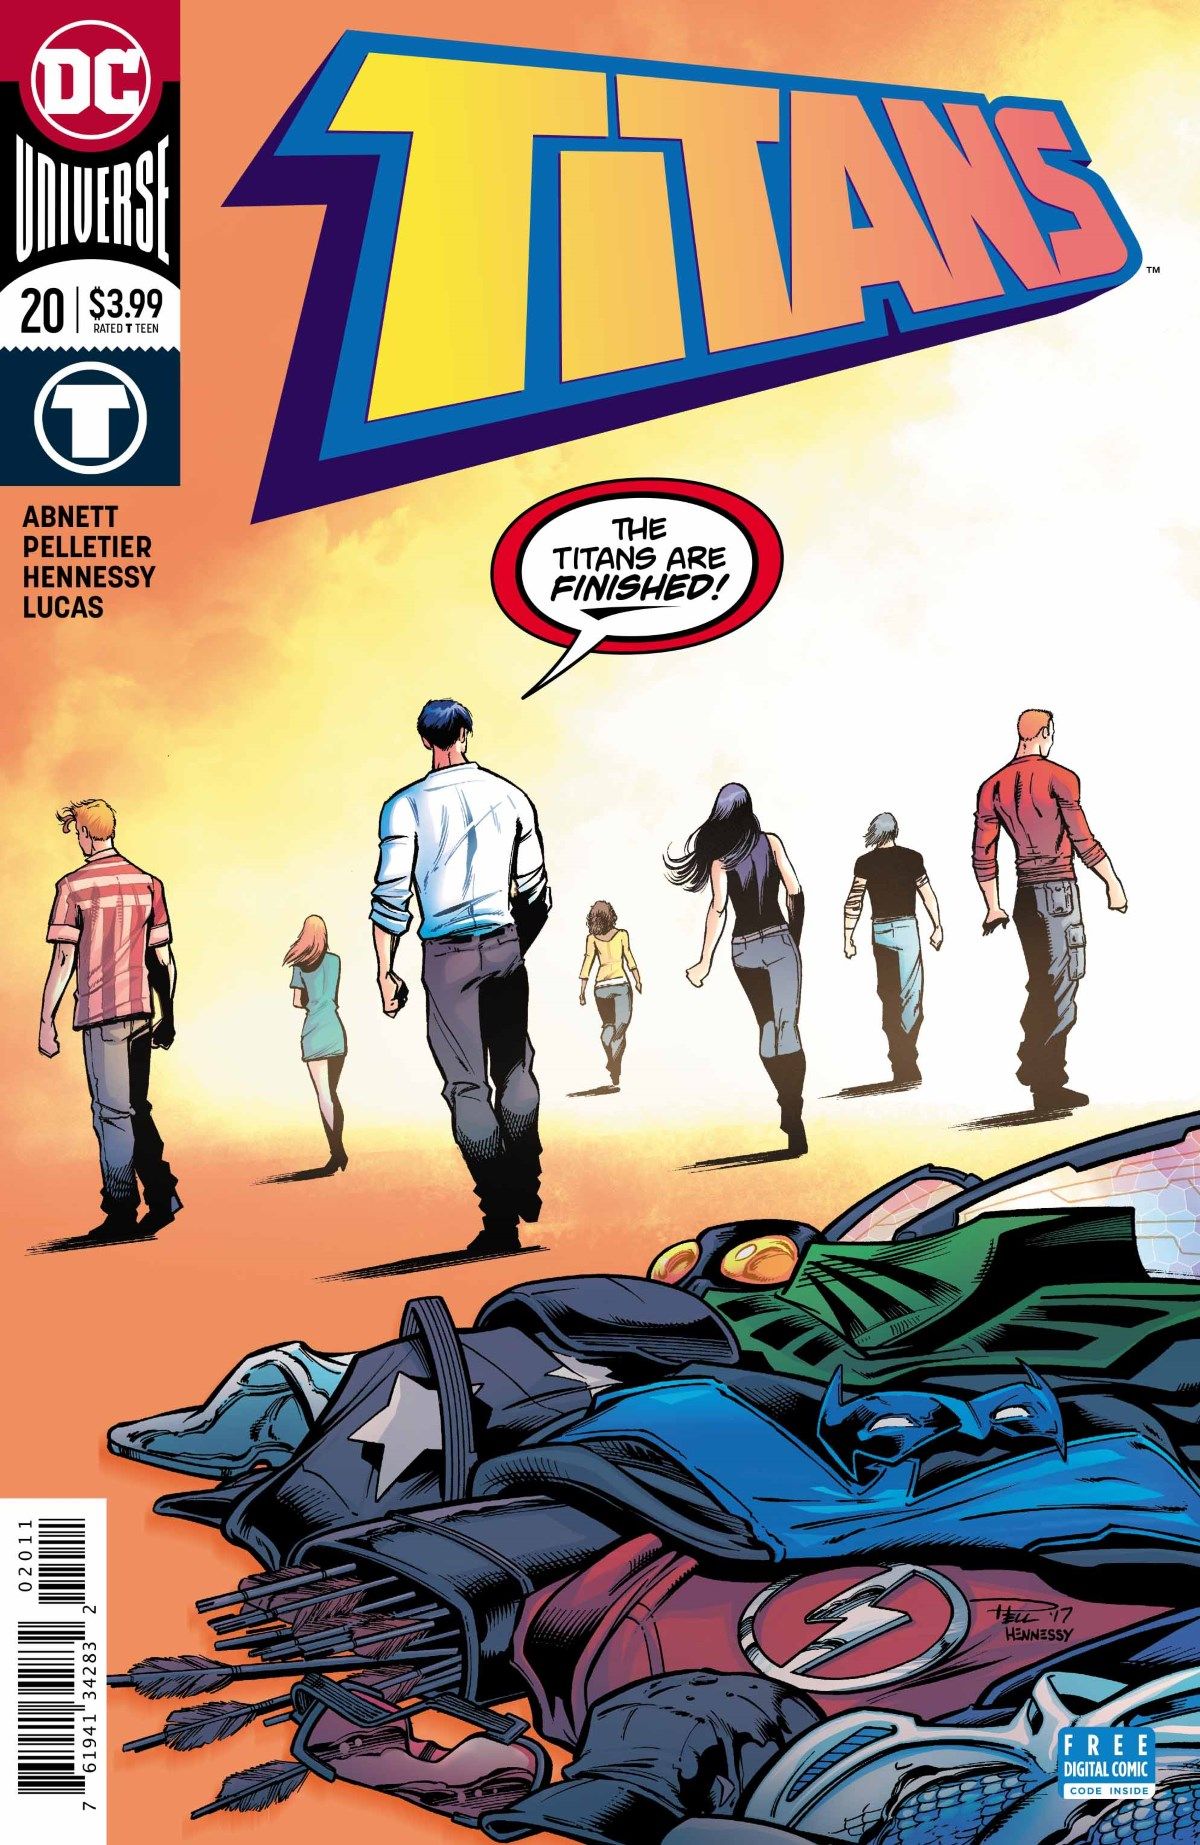 Roy Harper Leaves DC’s TITANS For a Killer Ex-Girlfriend